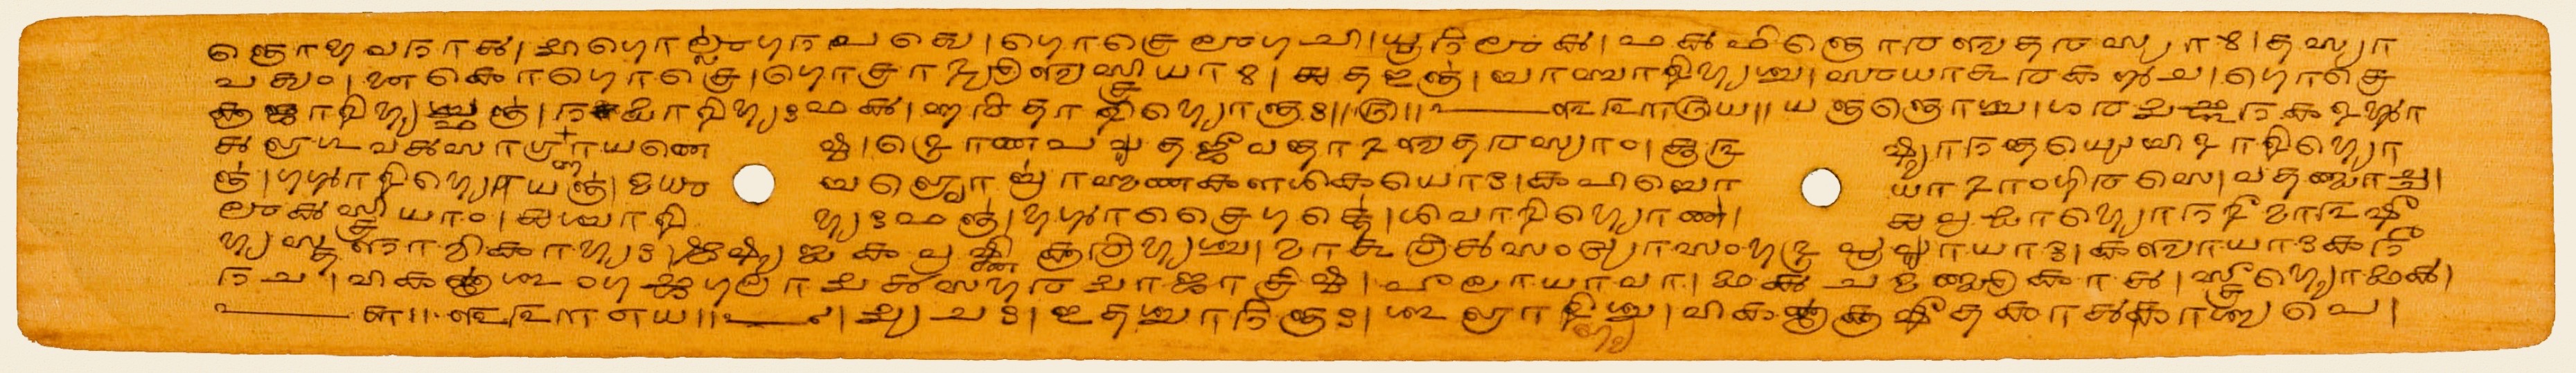 A palm-leaf page from the Aṣṭādhyāyī